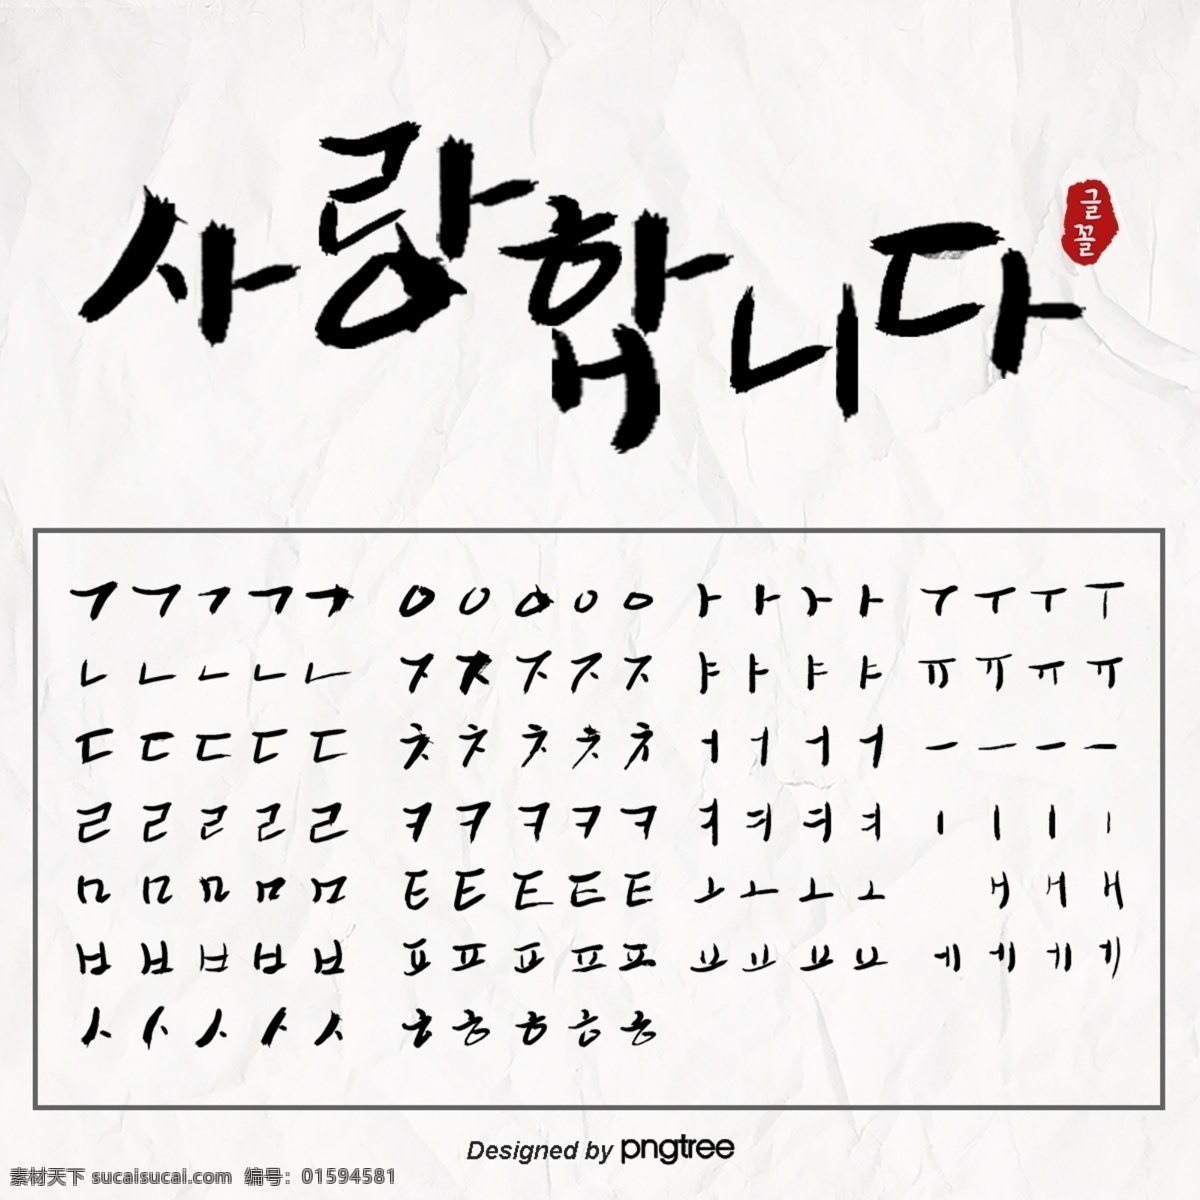 黑色 手笔 加油 韩文 书法 笔画 书法分解 n 字体字体 字体 笔画分解 韩文字体 韩文笔画